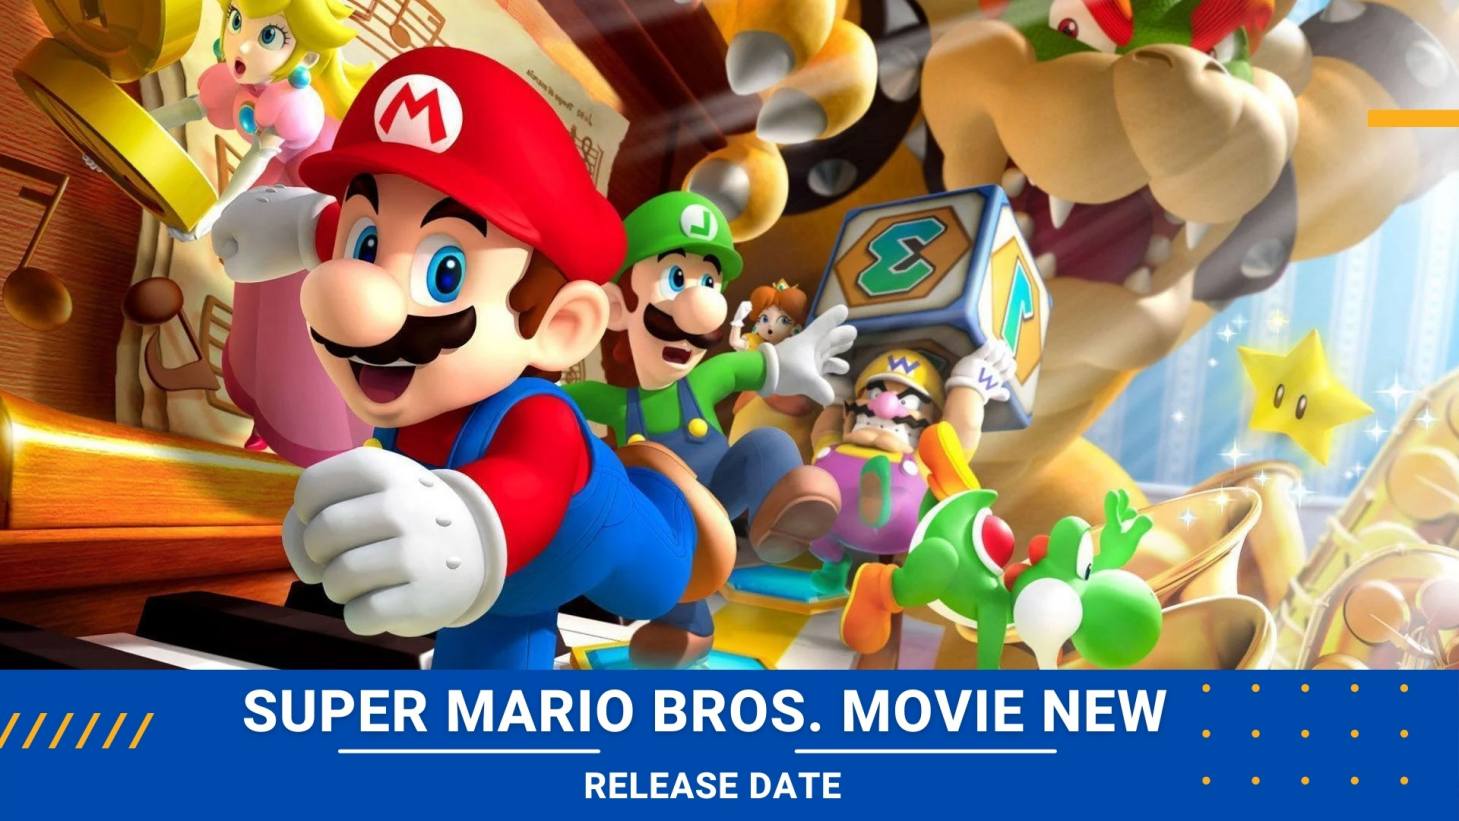 Super Mario Bros. Movie New Release date